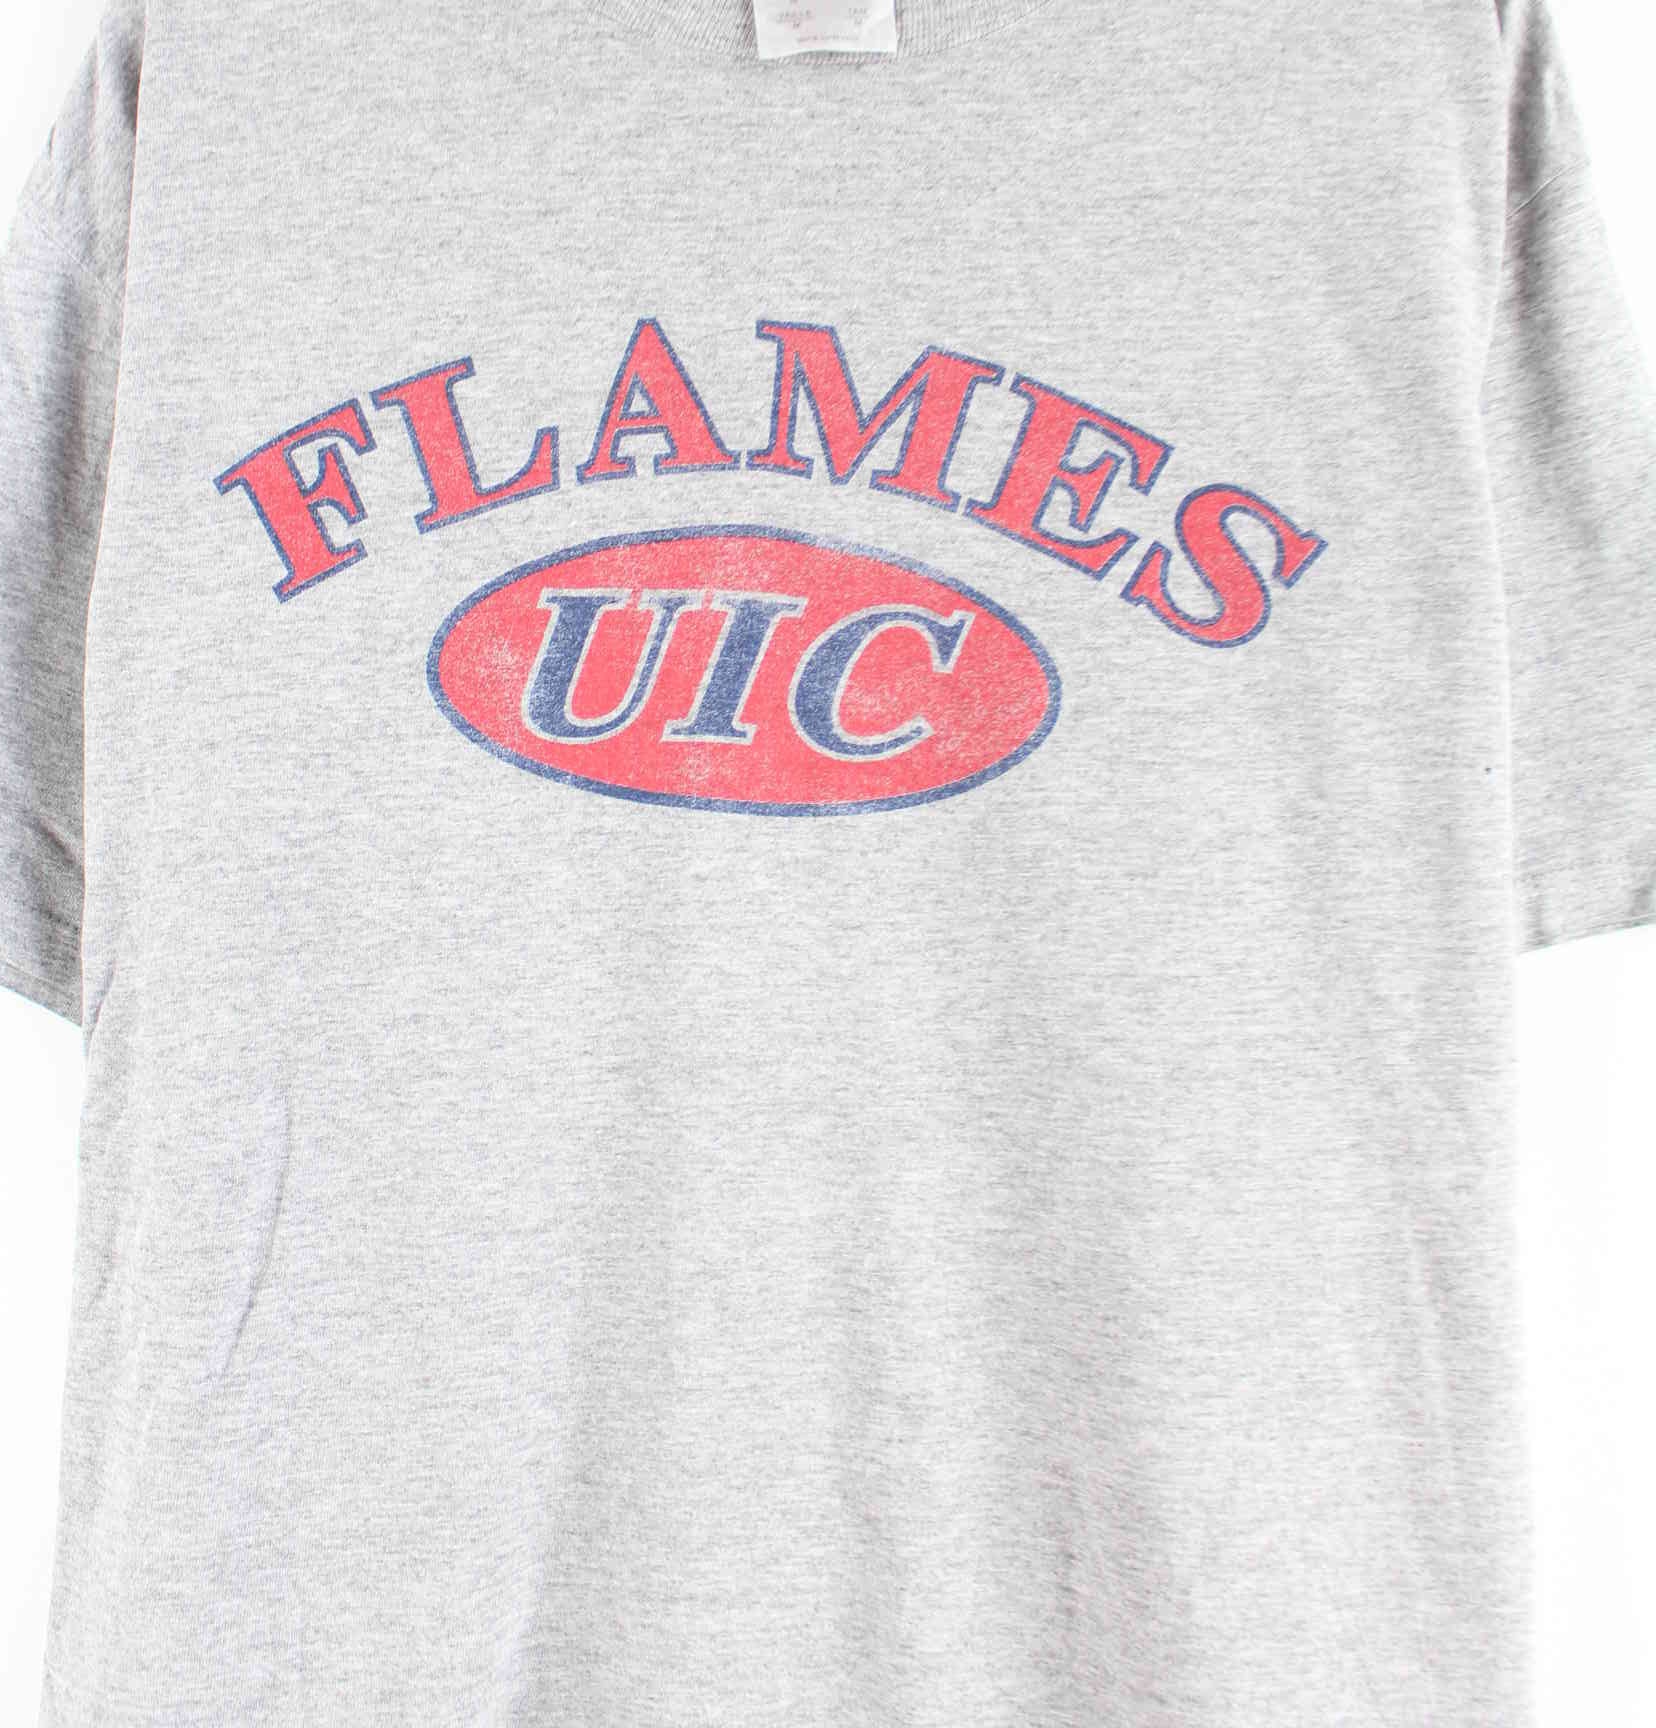 Adidas Flames UIC Print T-Shirt Grau M (detail image 1)